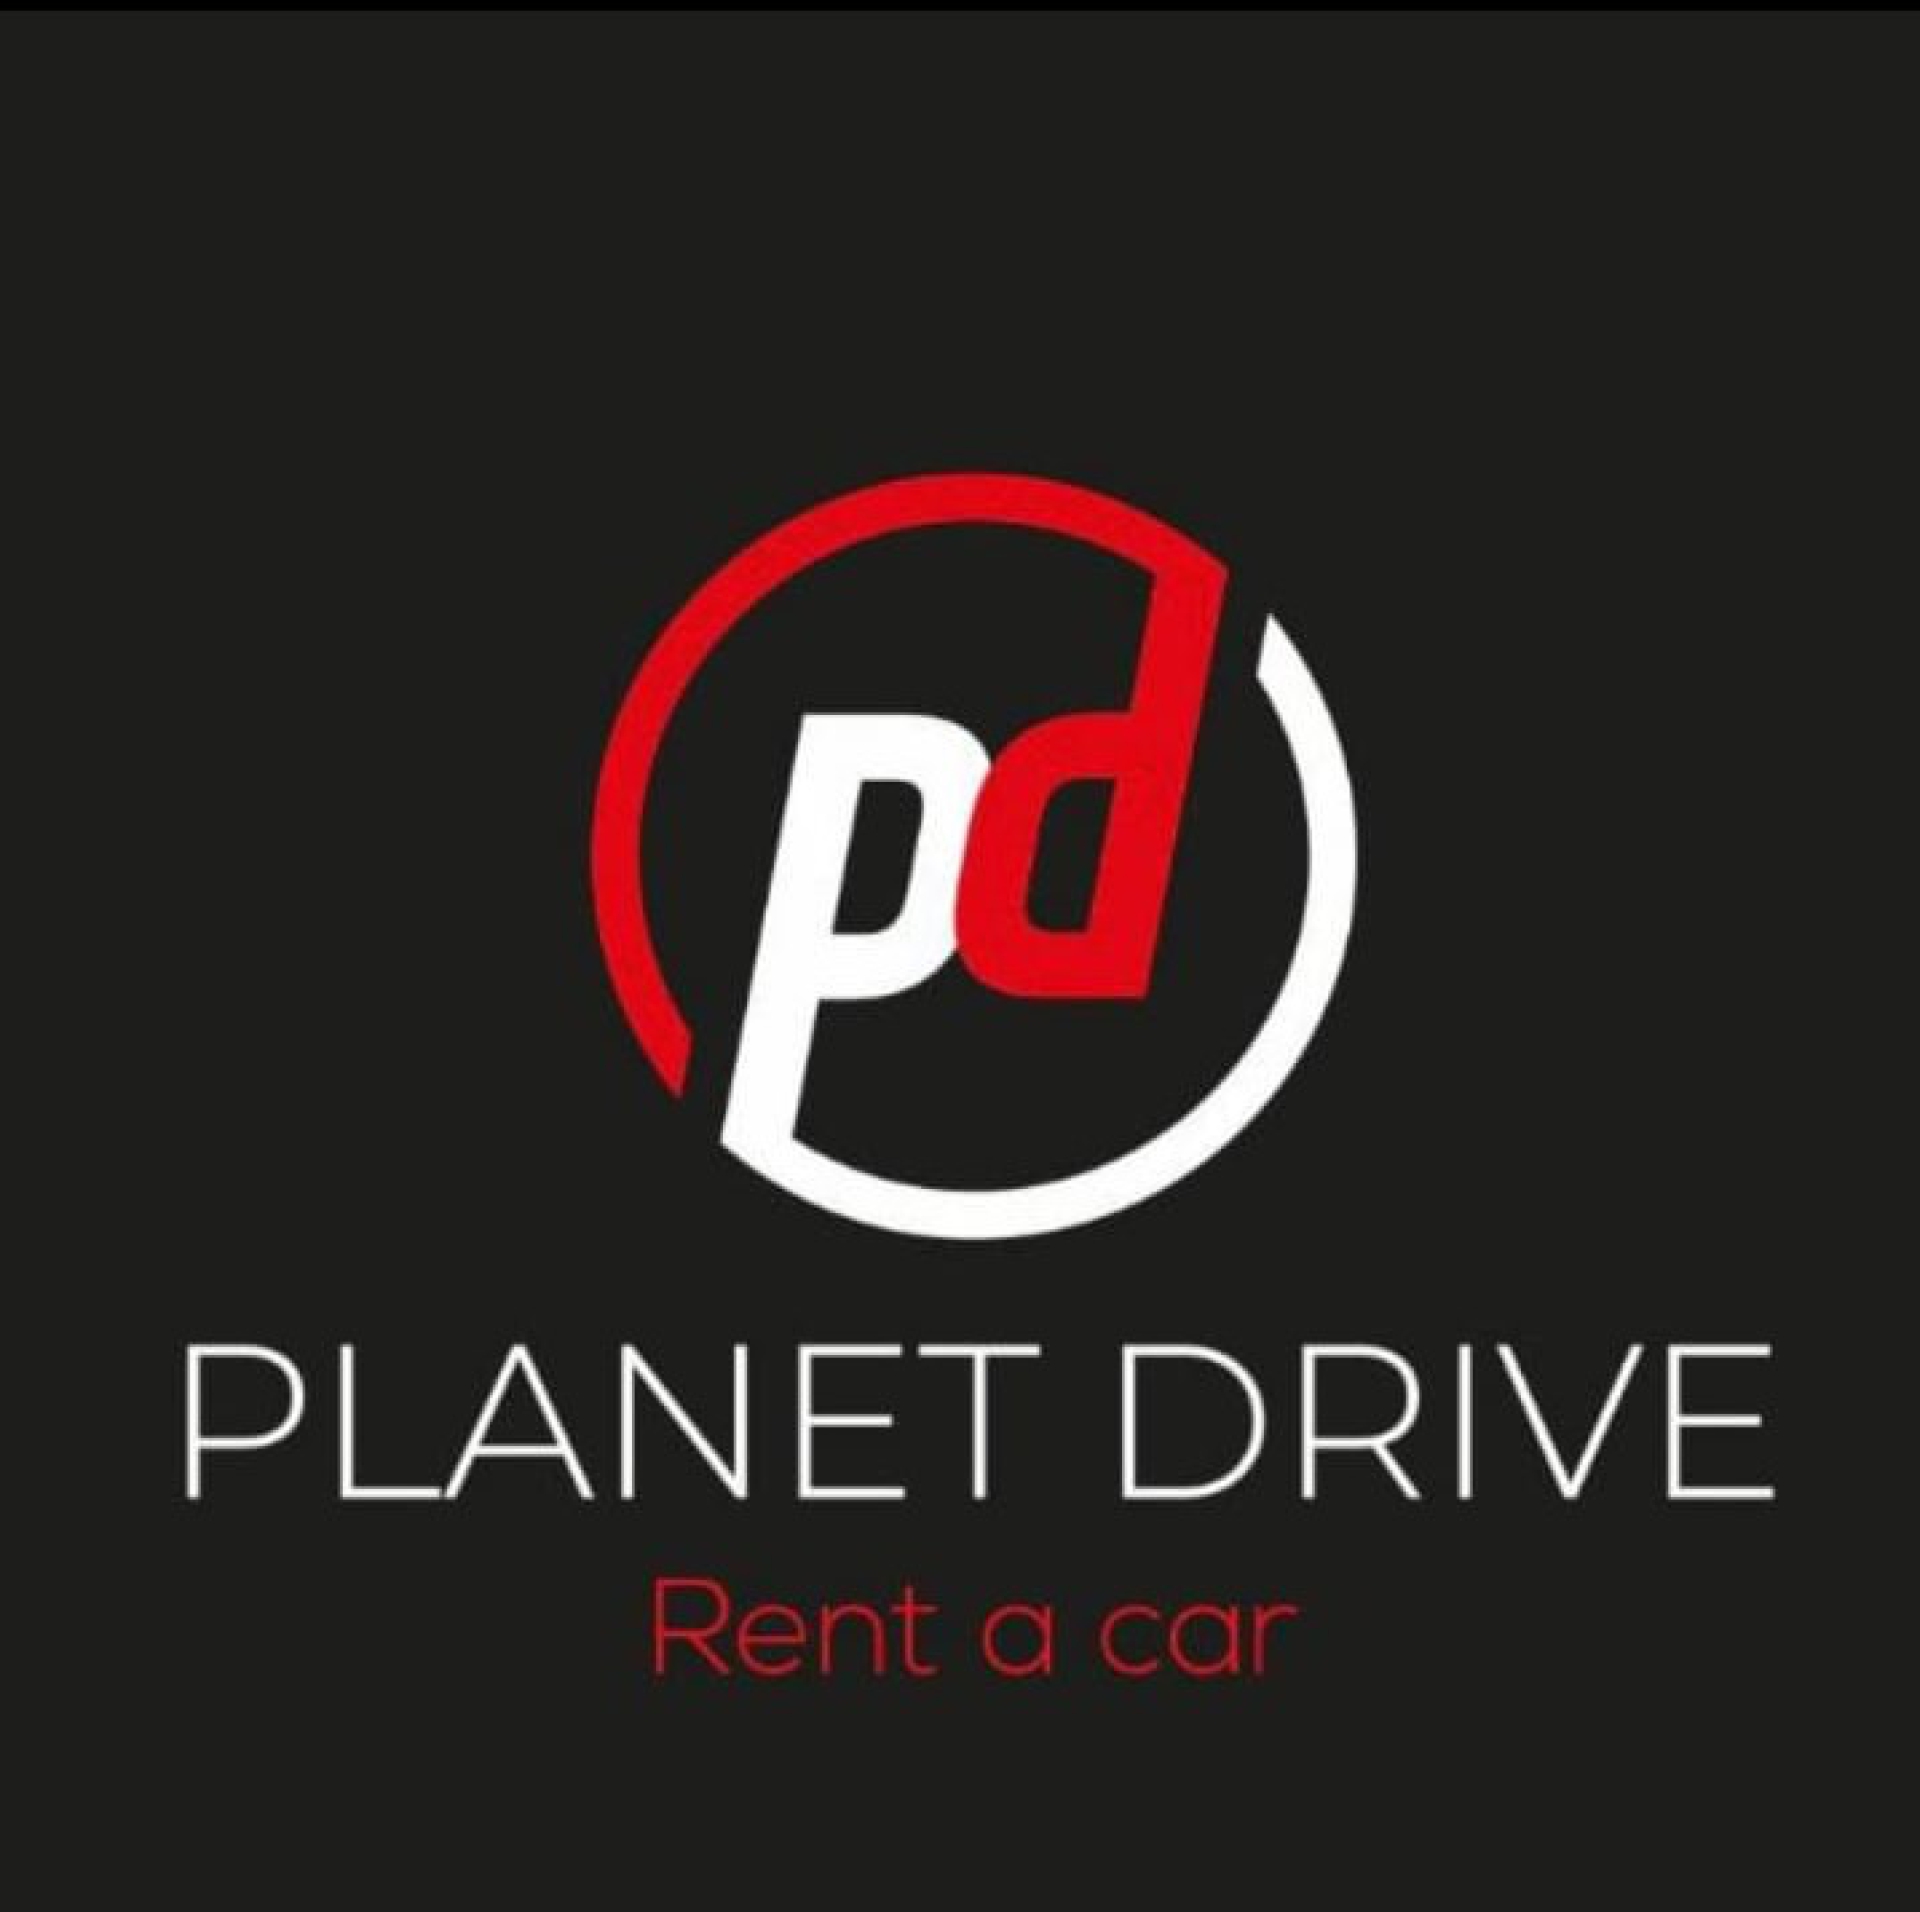 Planet drive